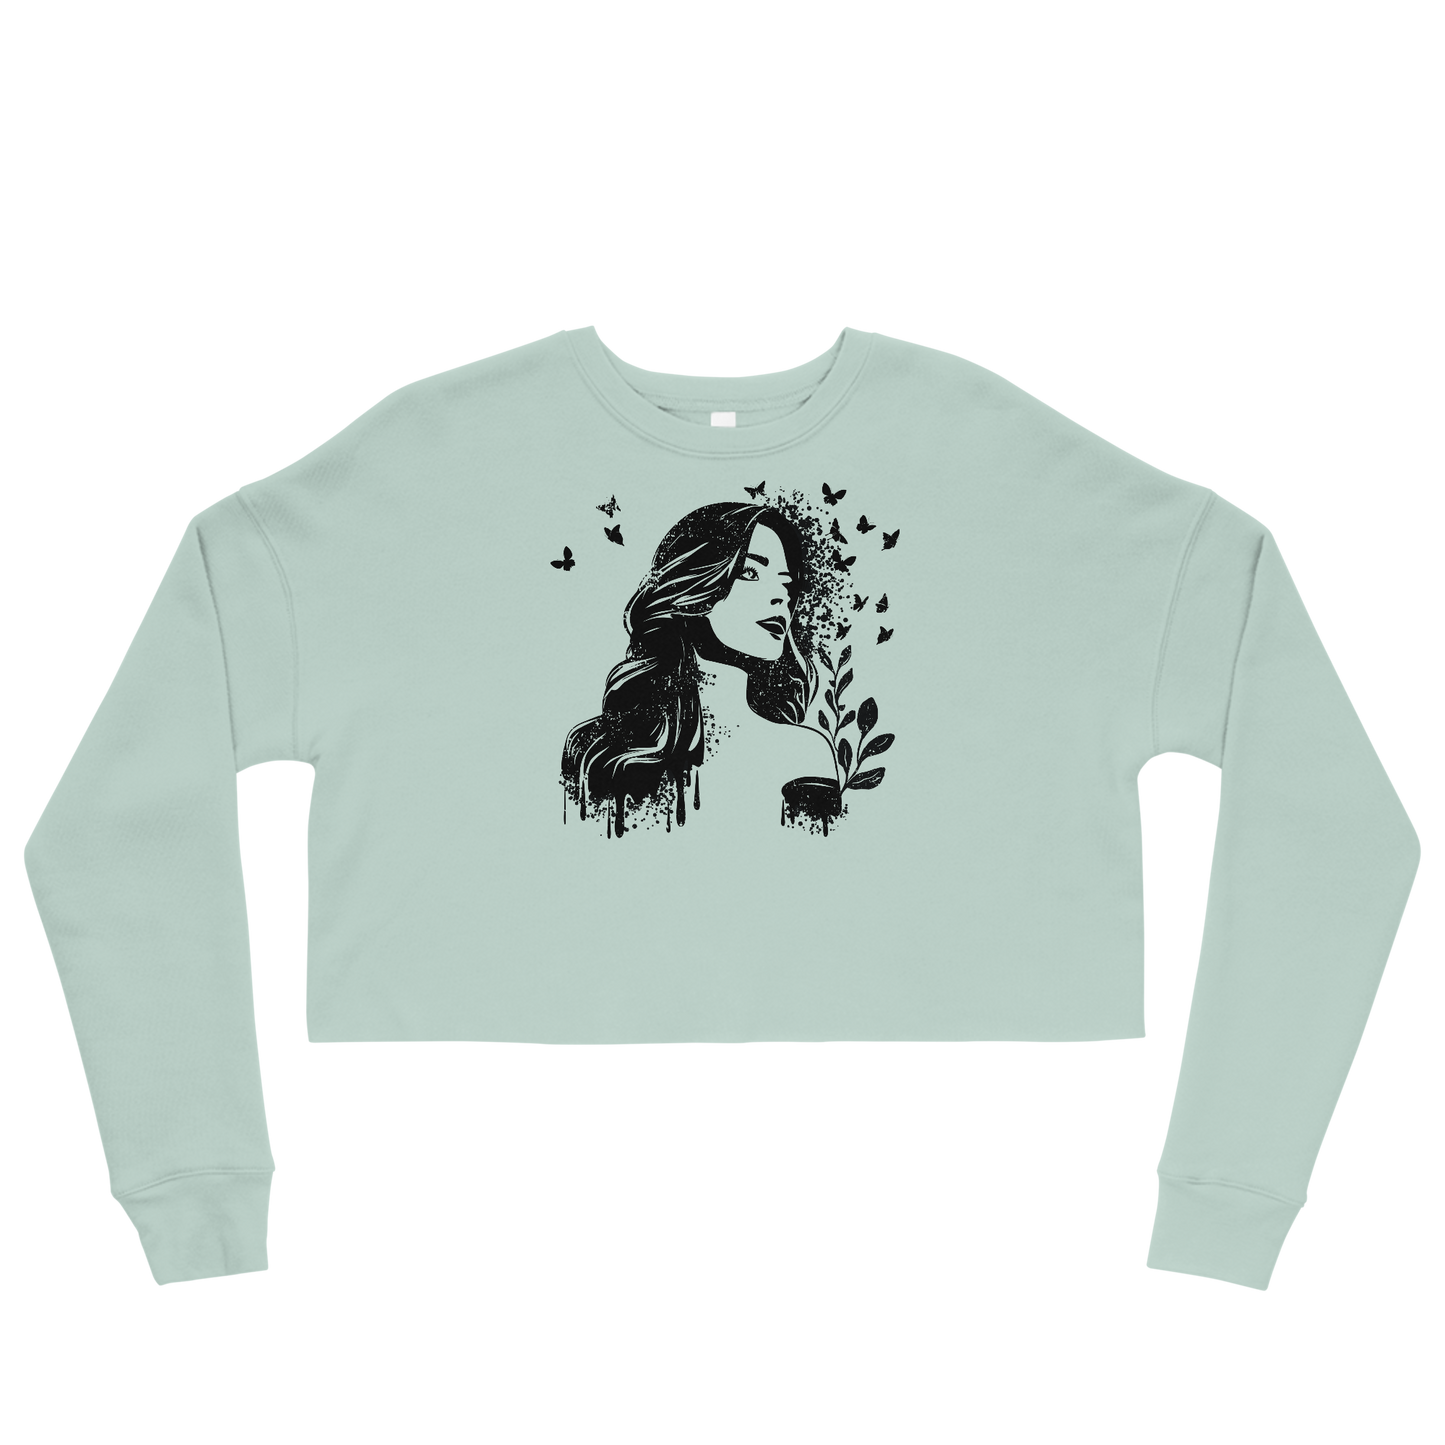 Retro Cropped Sweatshirt - Dreamy Girl in Monochrome Style Dusty Blue